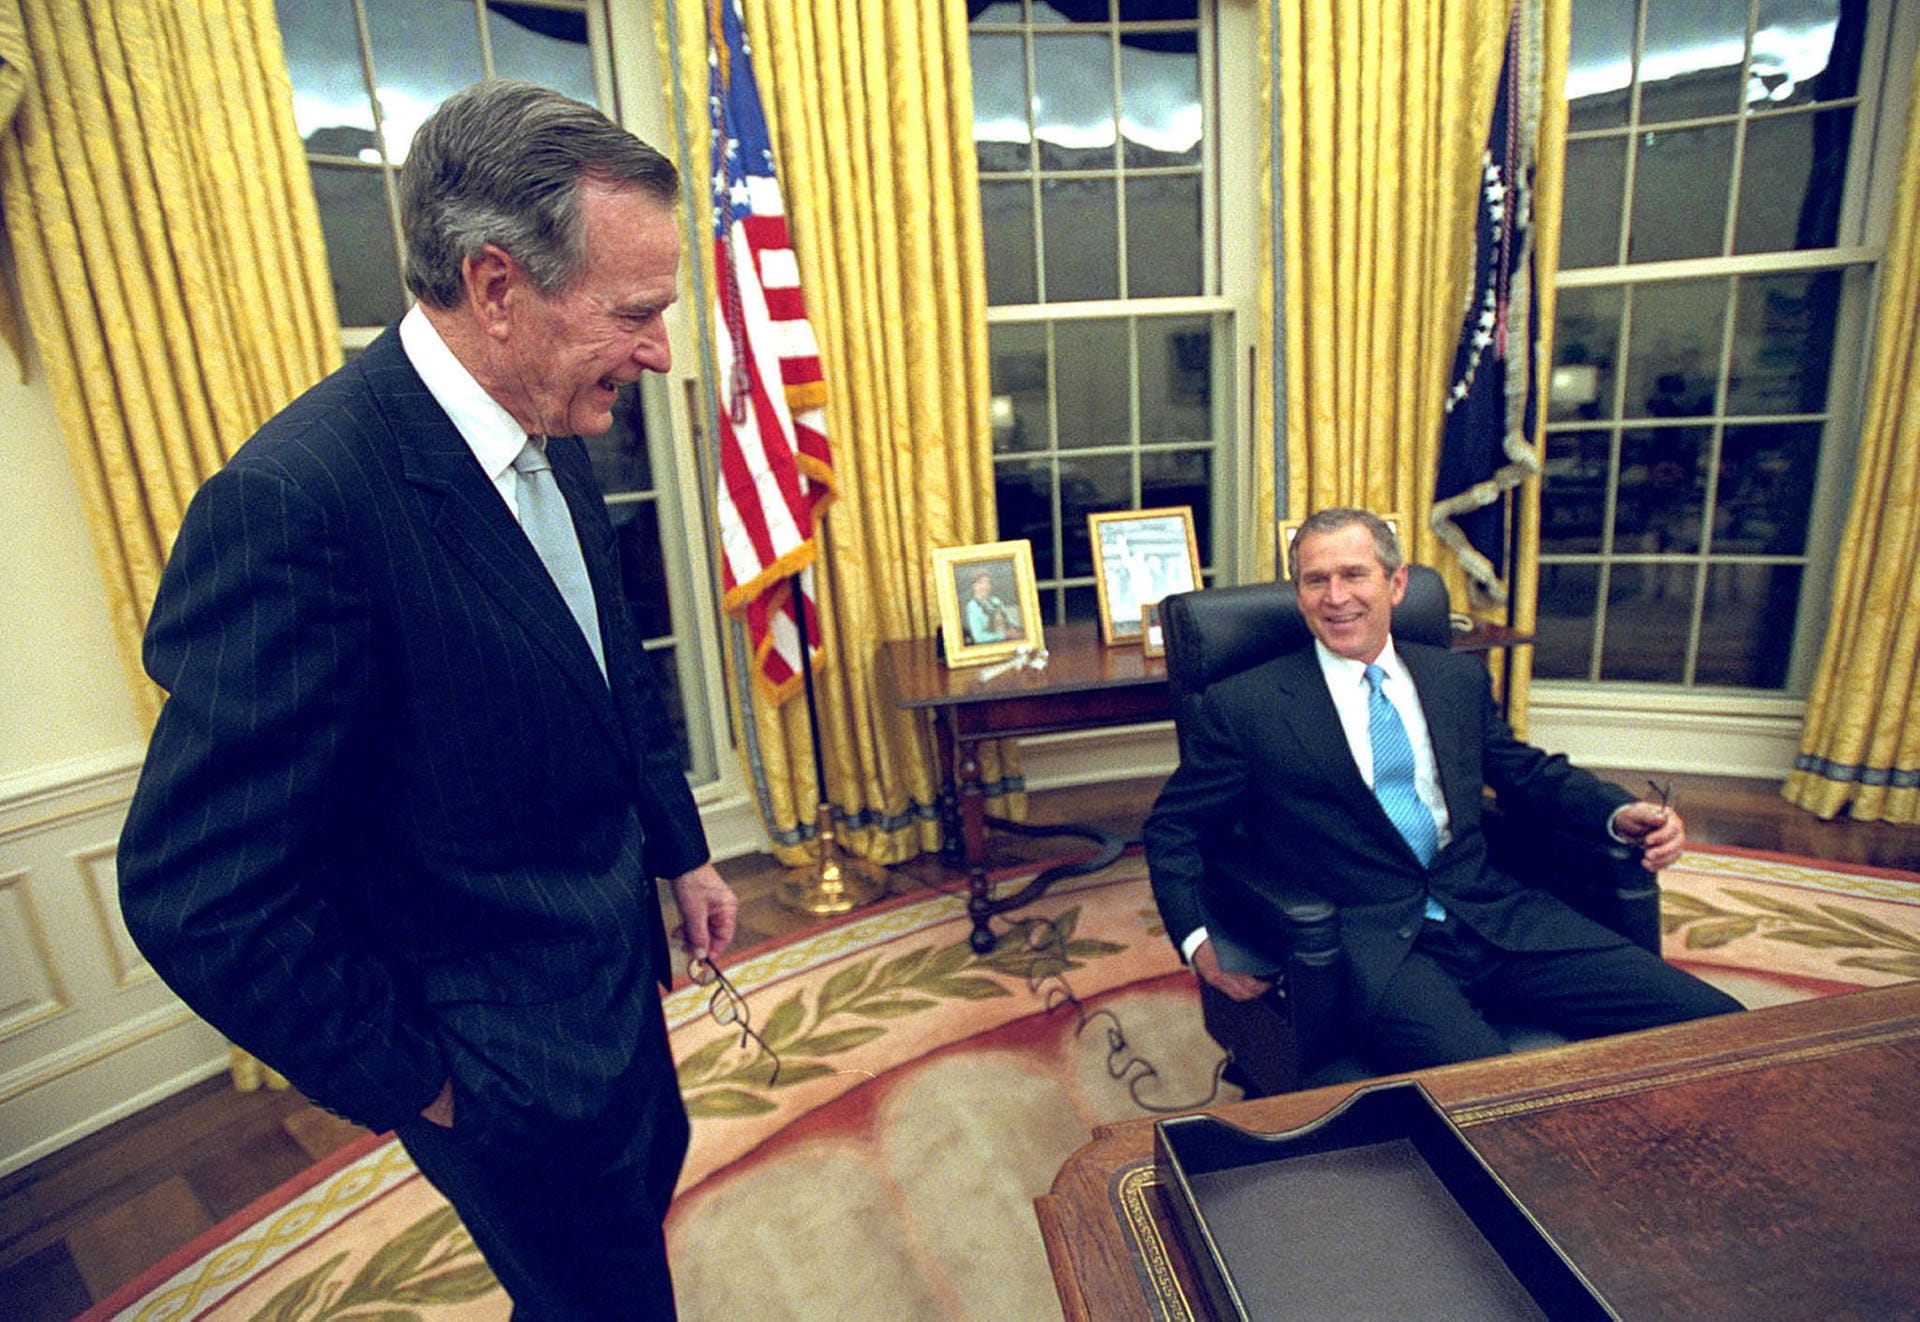 Vater und Sohn: Am Abend seiner Amtseinführung nimmt George W. Bush im Januar 2001 in jenem Oval Office im Weißen Haus Platz, in dem sein Vater George H. W. Bush von 1989 bis 1993 wirkte. Bush junior wird ein aggressiverer Präsident als sein Vater sein, insbesondere in der Außenpolitik.